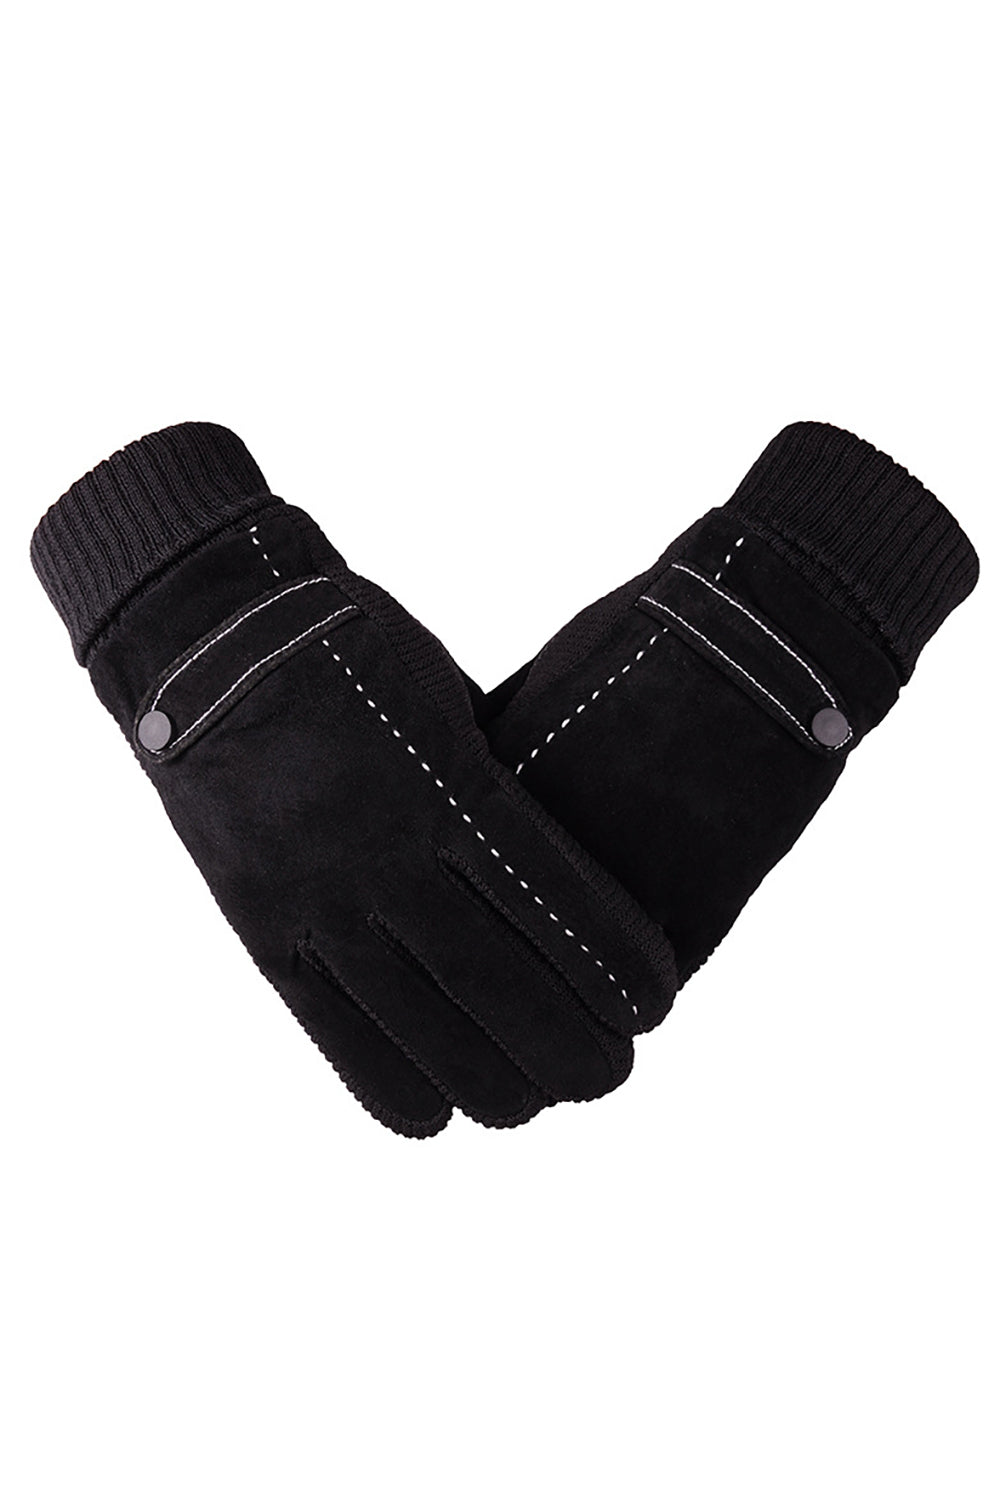 Black Pigskin Fleece Gloves For Men